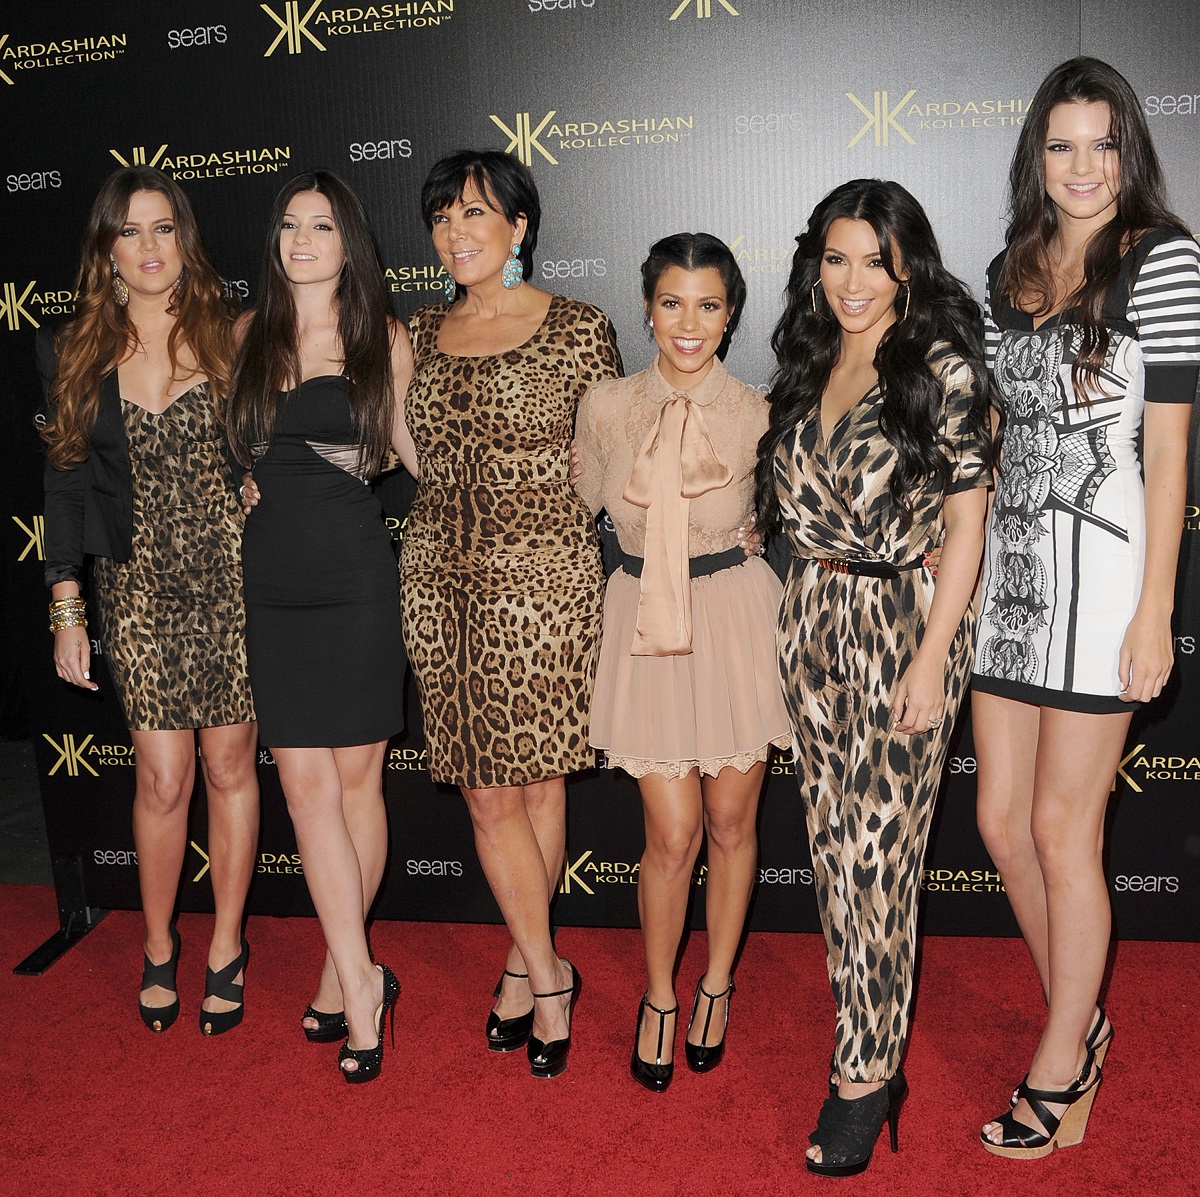 Fotografie de familie cu surorile Kardashian, Khloe Kardashian, Kylie Jenner, Kris Jenner, Kourtney Kardashian, Kim Kardashian și Kendall Jenner la lansarea proprie colecții de haine din 2011